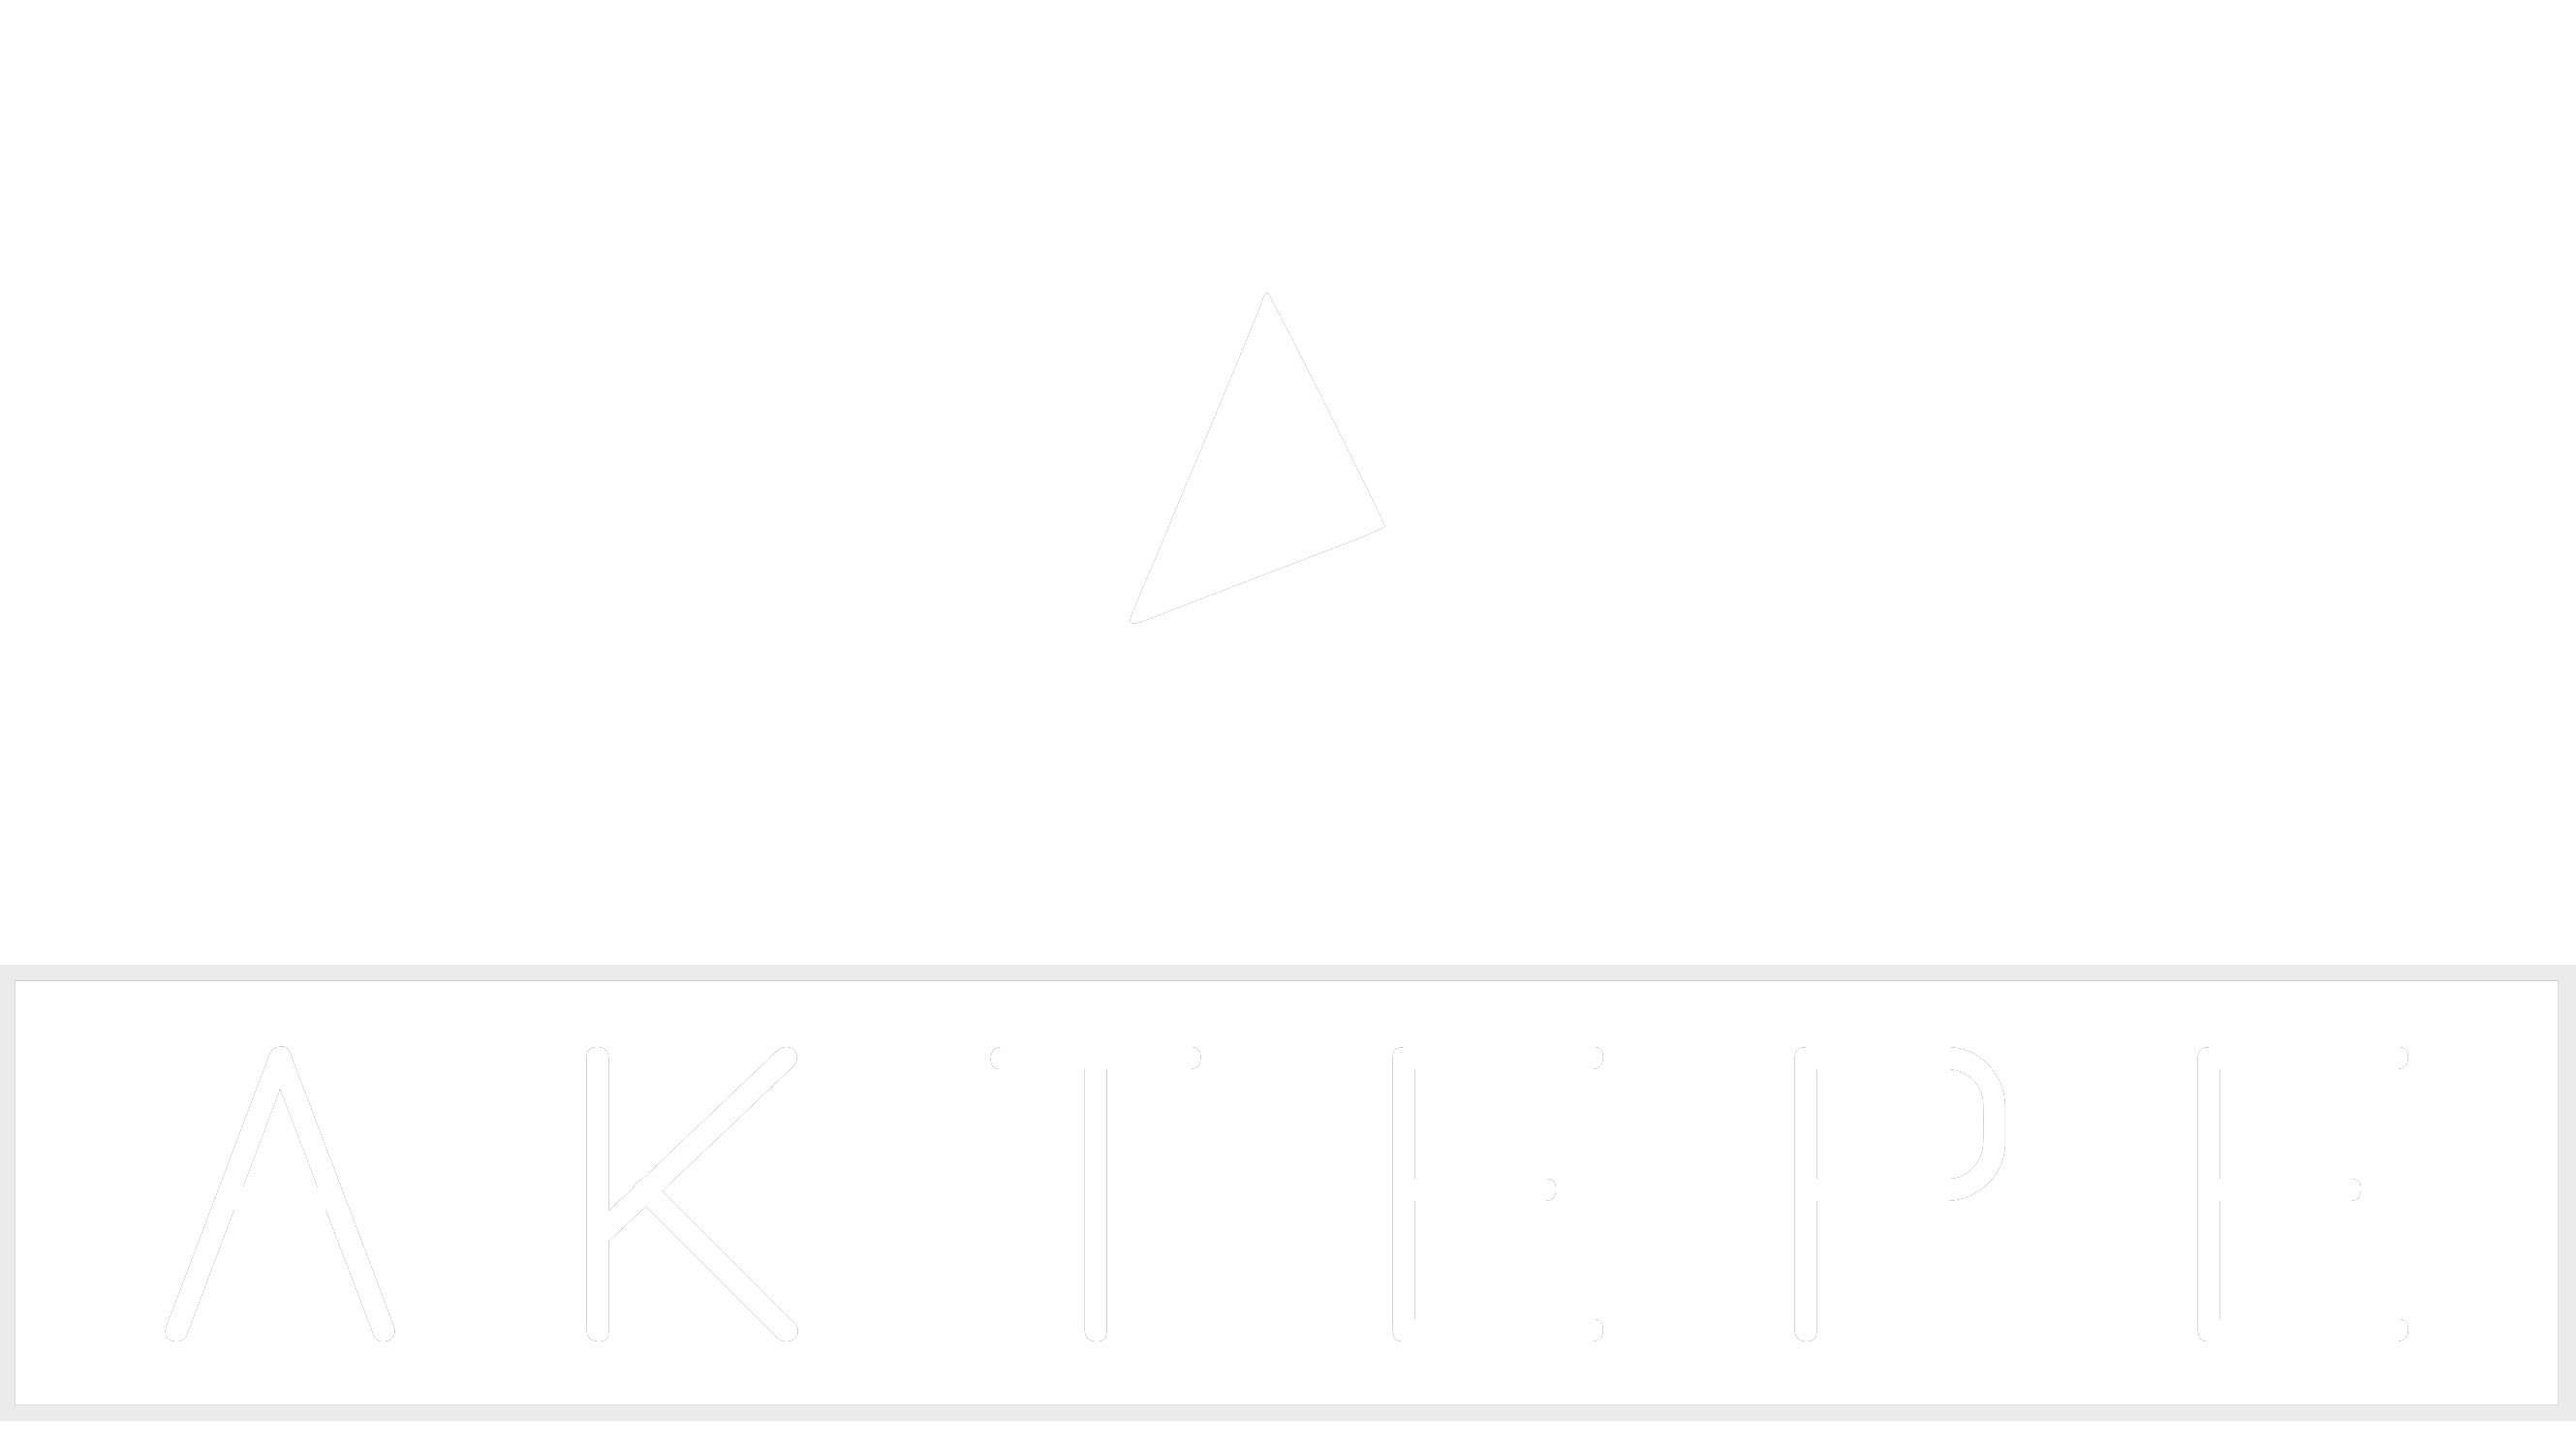 S60 - Aktepe Shop - Oto Müzik Görüntü Navigasyon Sistemleri ve Teyp Çerçevesi Satış Merkezi